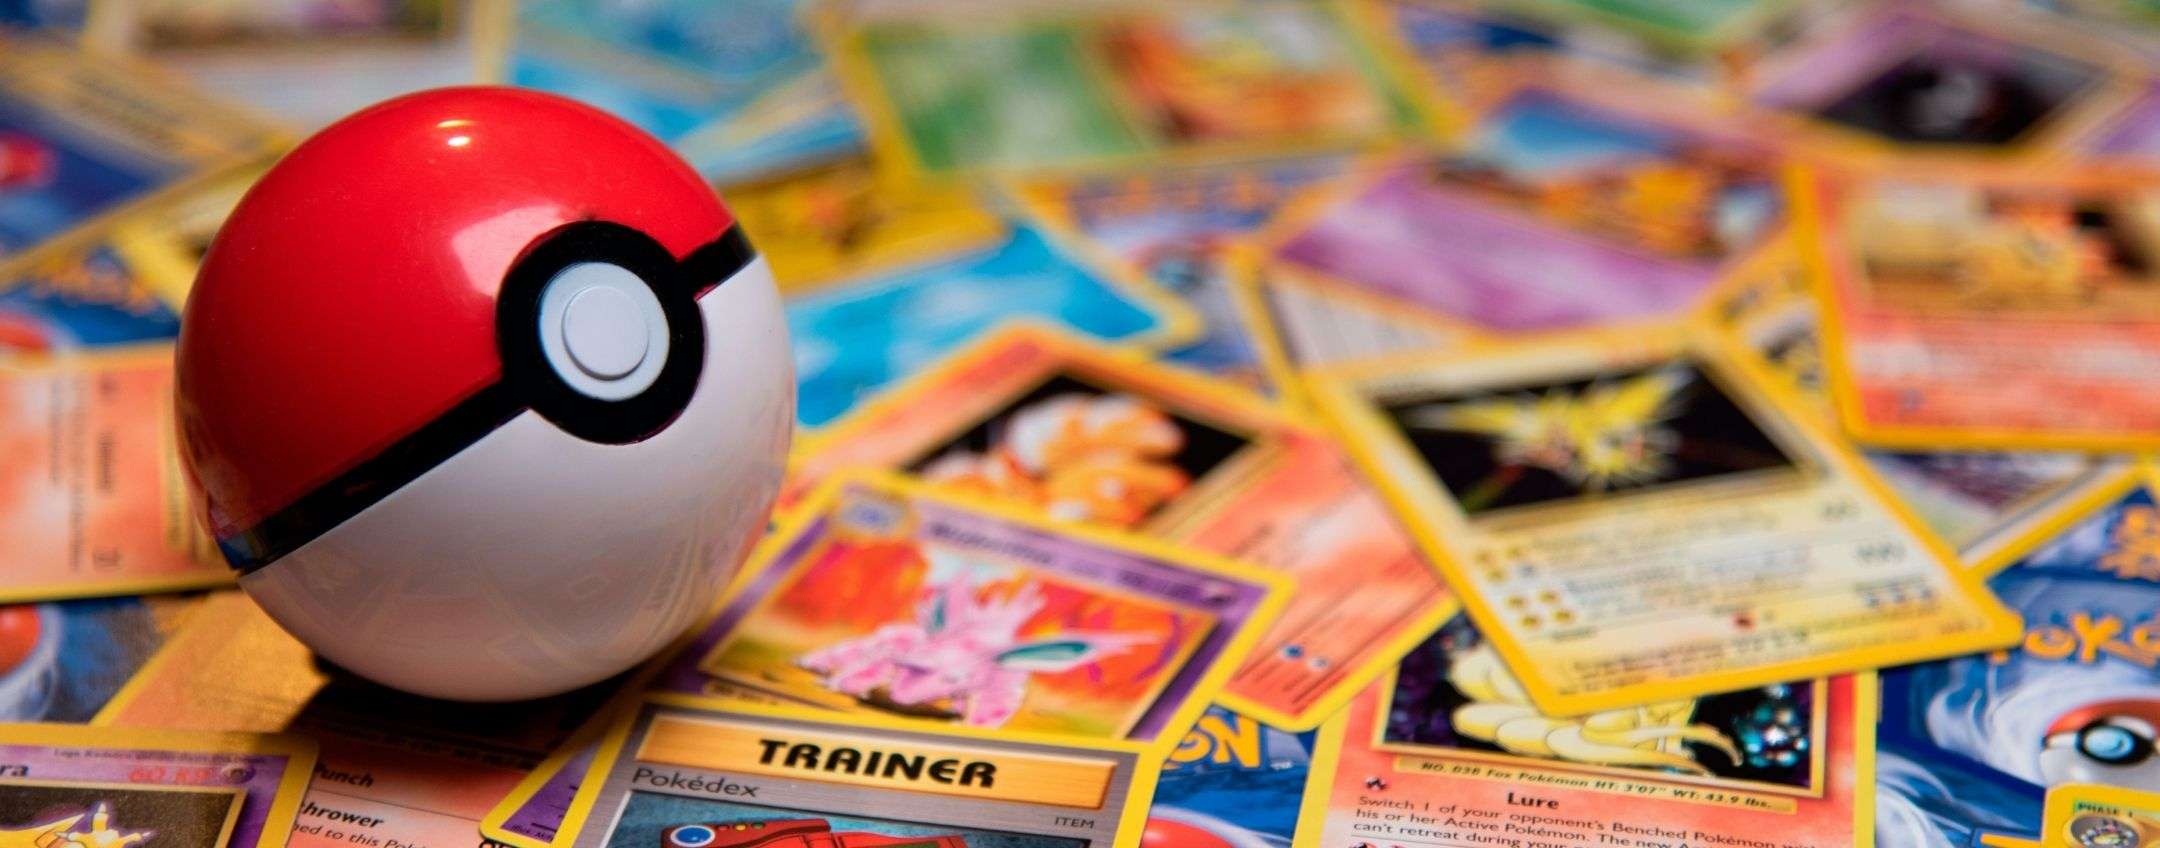 Una rarissima carta Pokémon acquistata con i sussidi Covid: arrestato